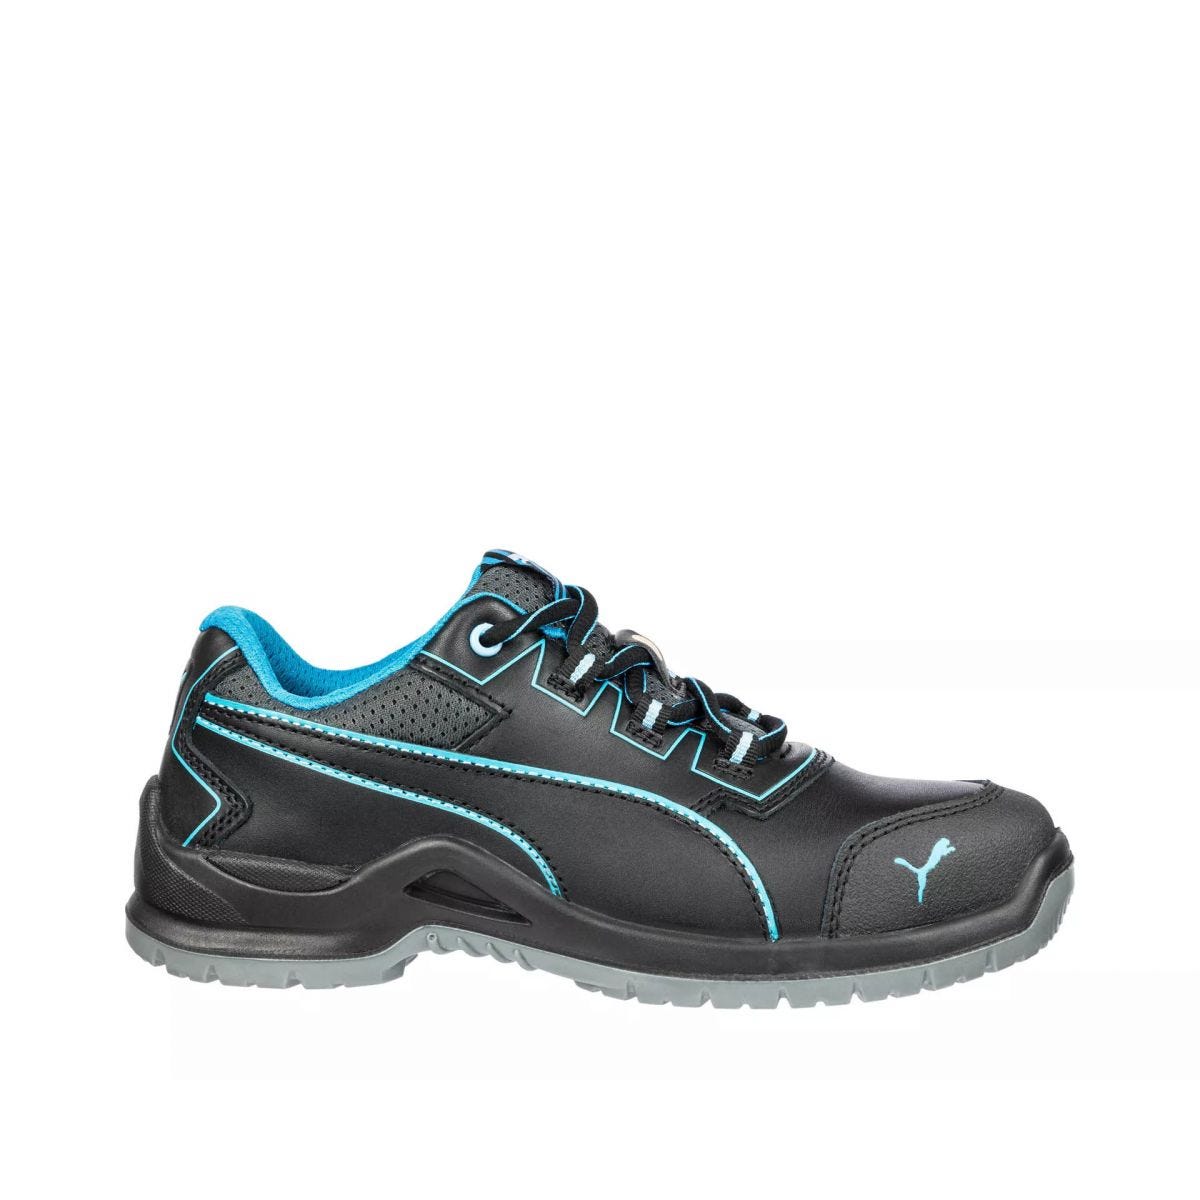 Chaussures de sécurité Niobe low WNS S3 ESD SRC bleu - Puma - Taille 39 0